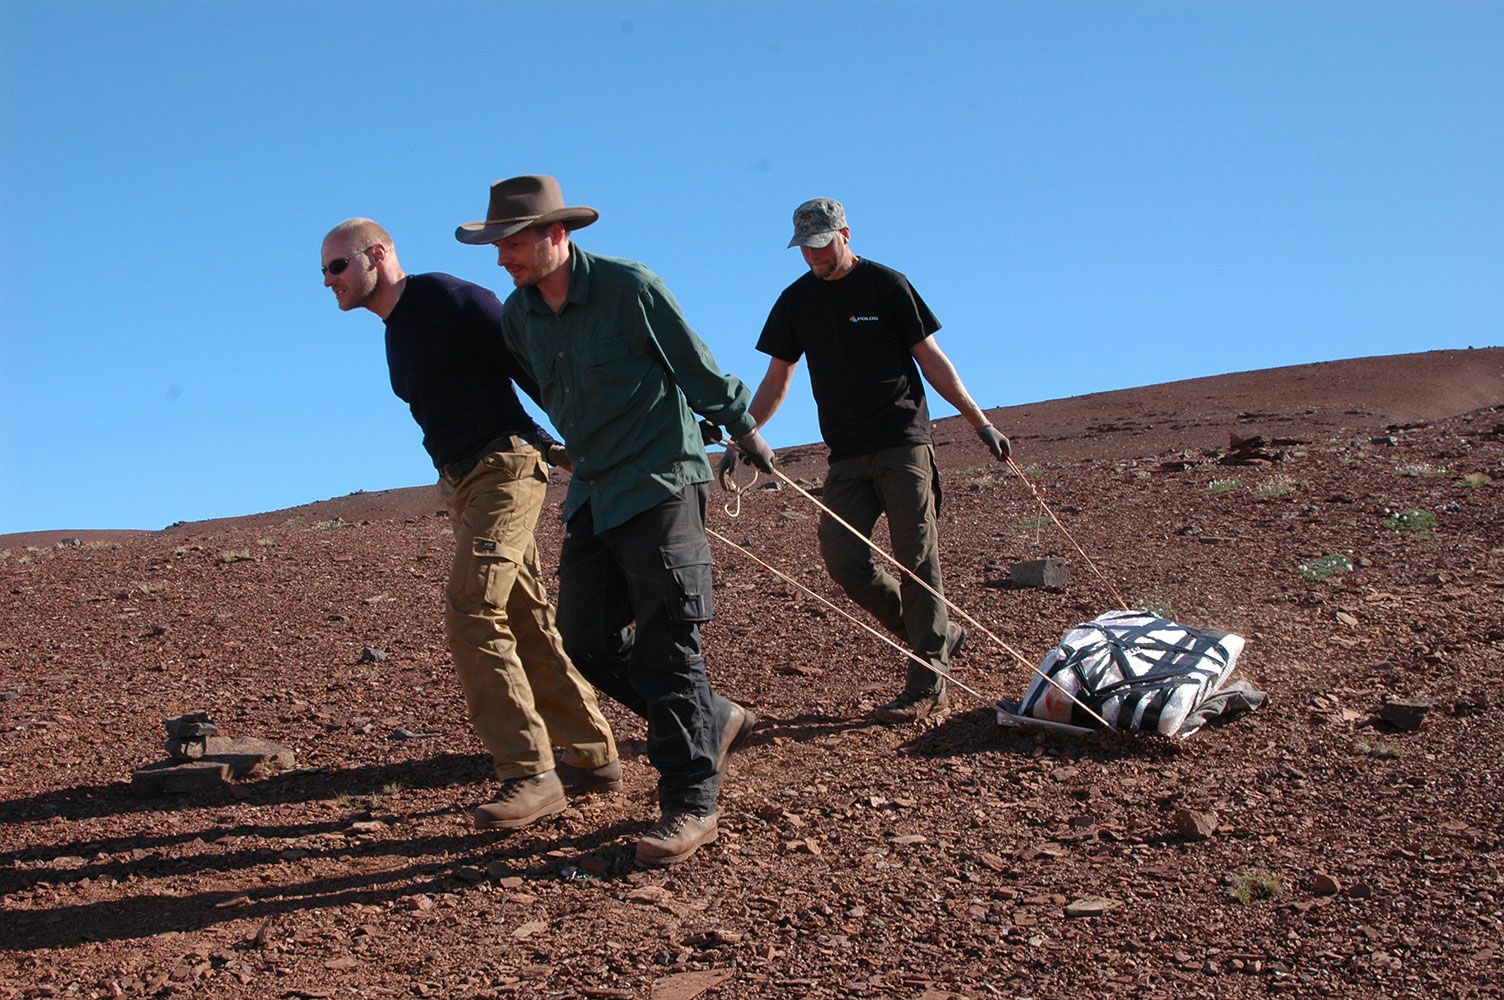 Fotografi fra Grønland, hvor tre mænd slæber stenblokke med knogler